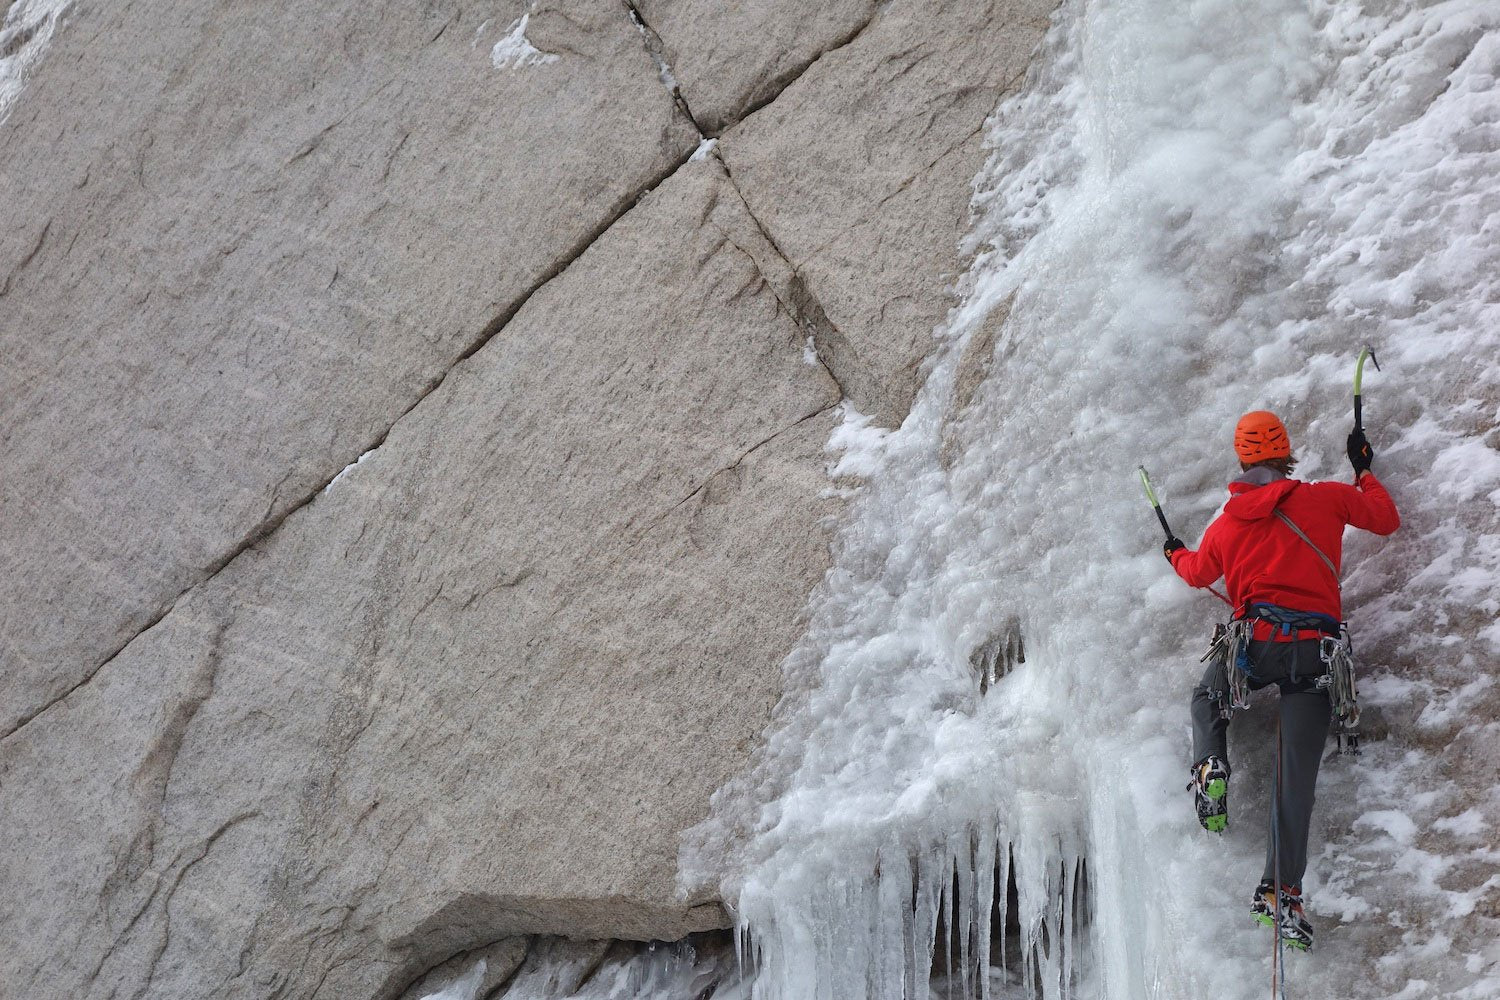 Pro Mountaineer Kurt Ross Shares His Alpine Climbing Gear List